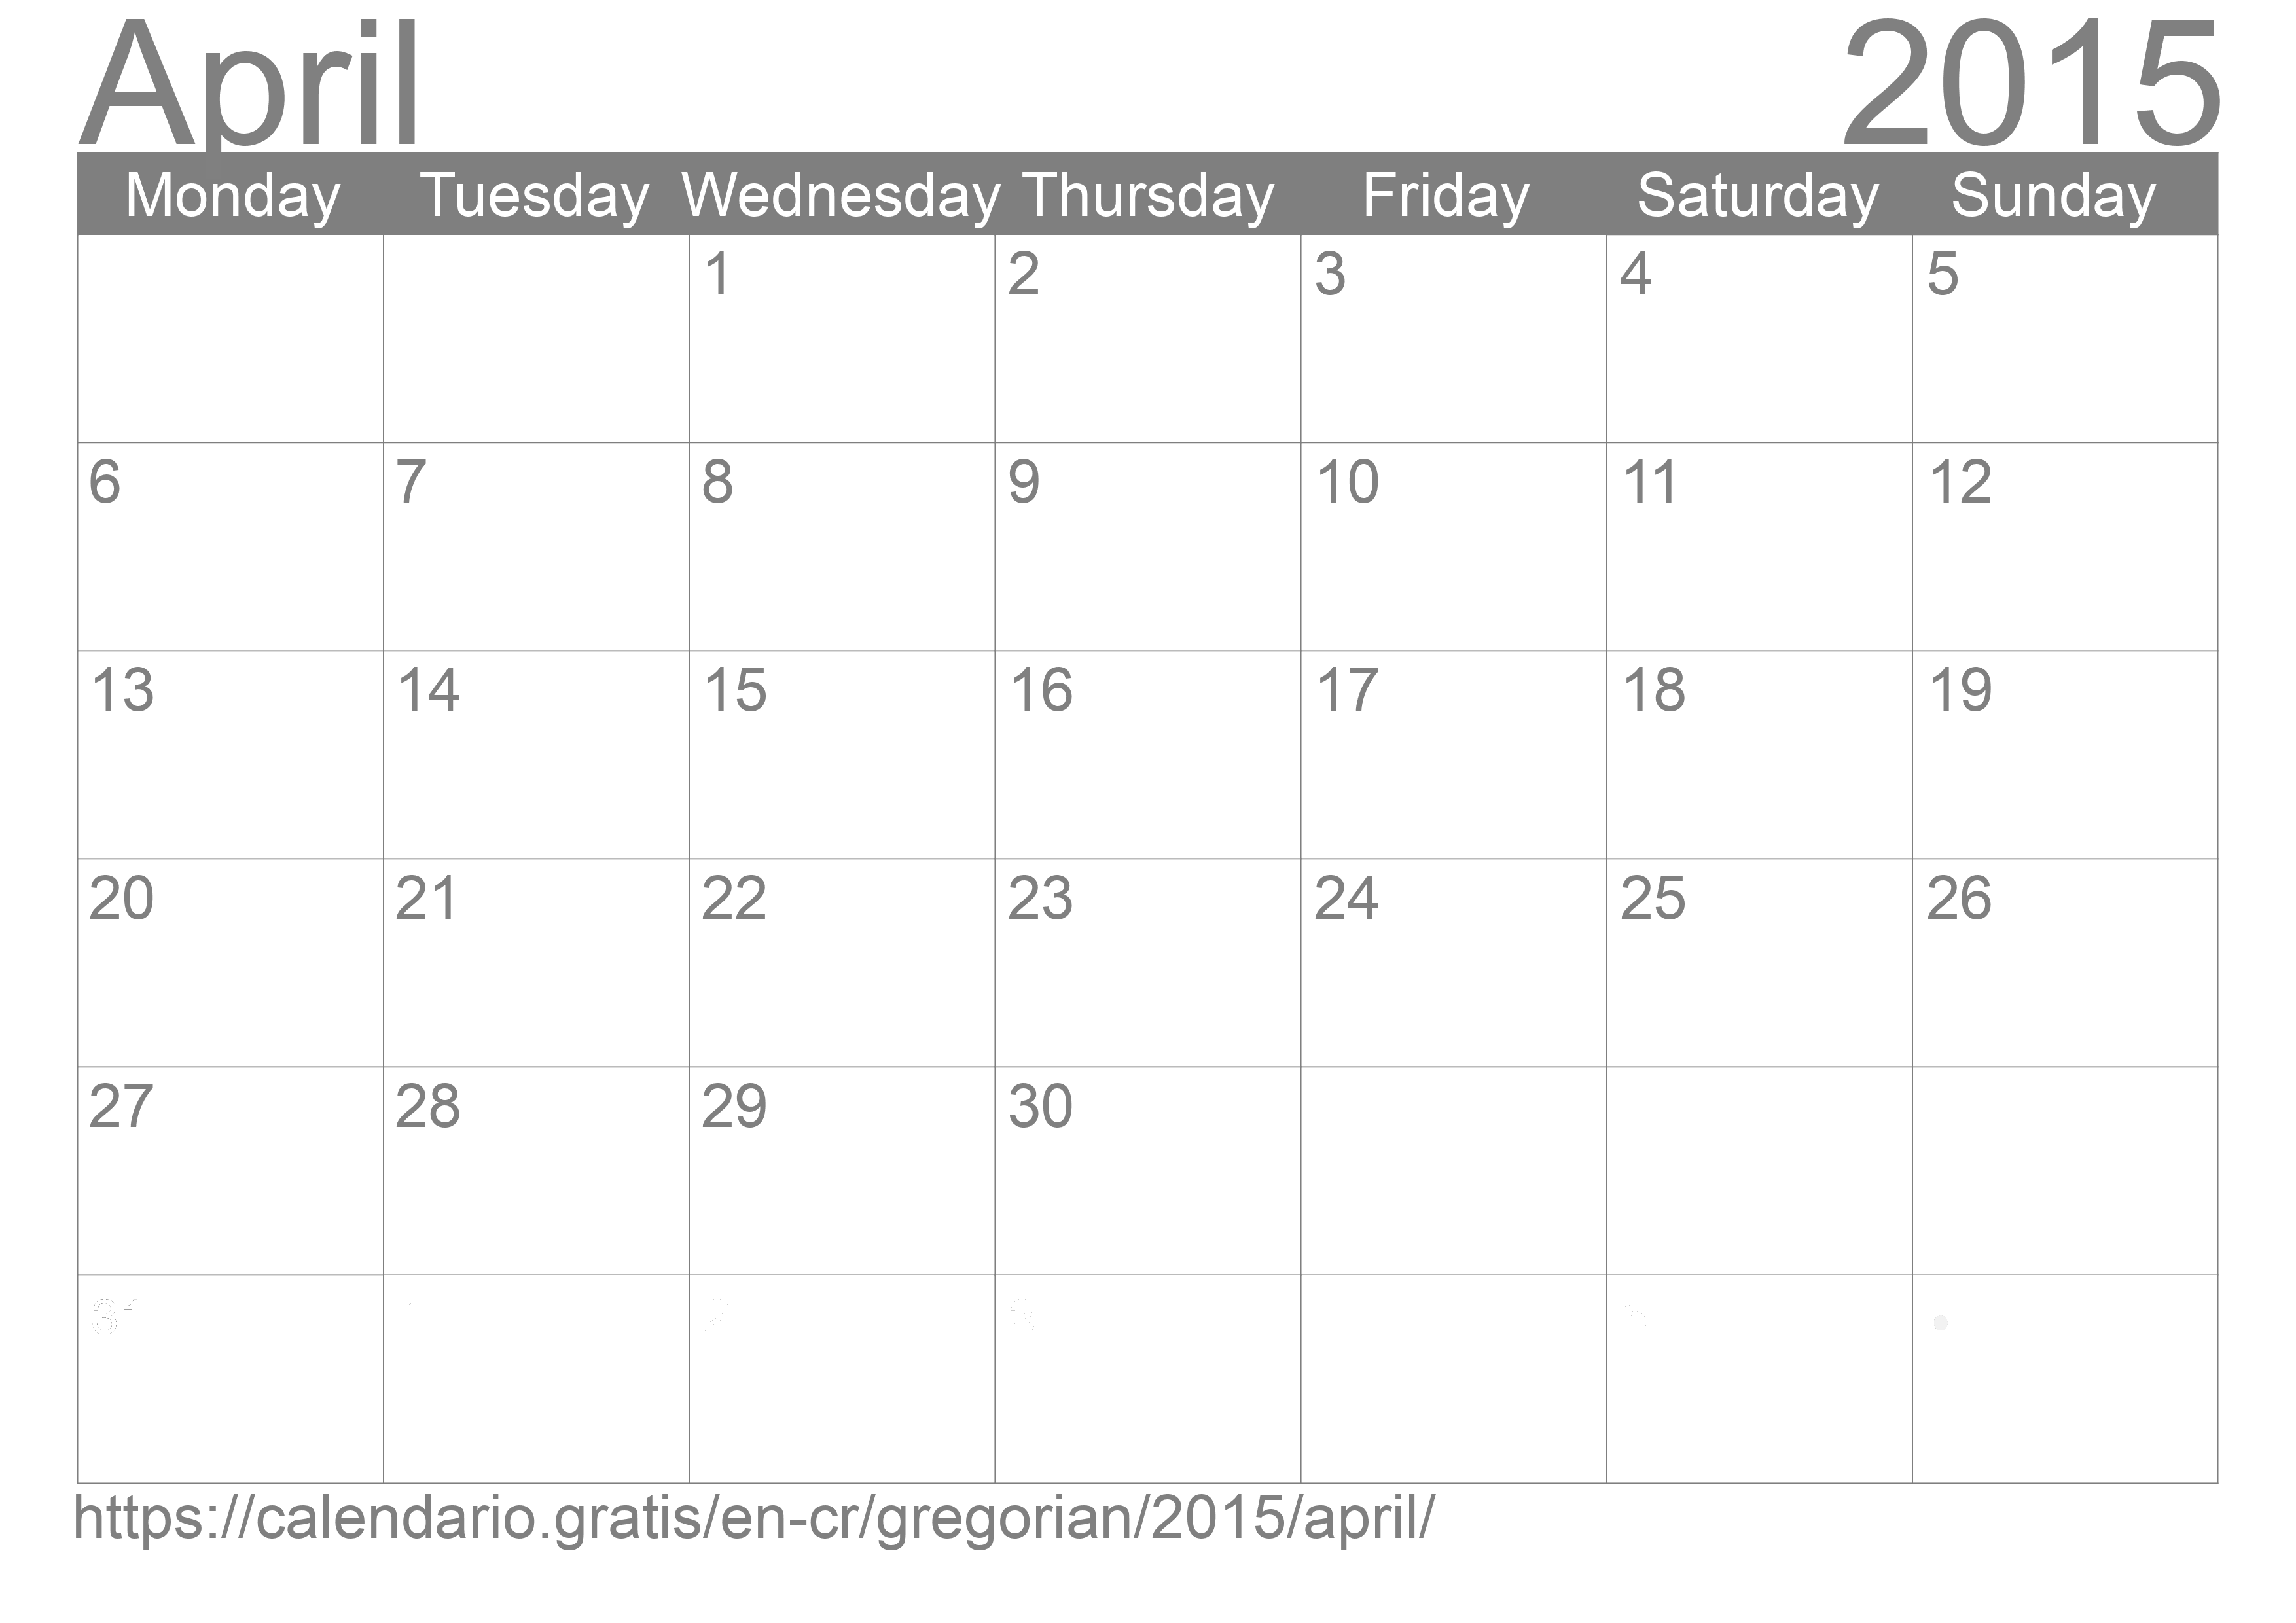 Calendar April 2015 to print